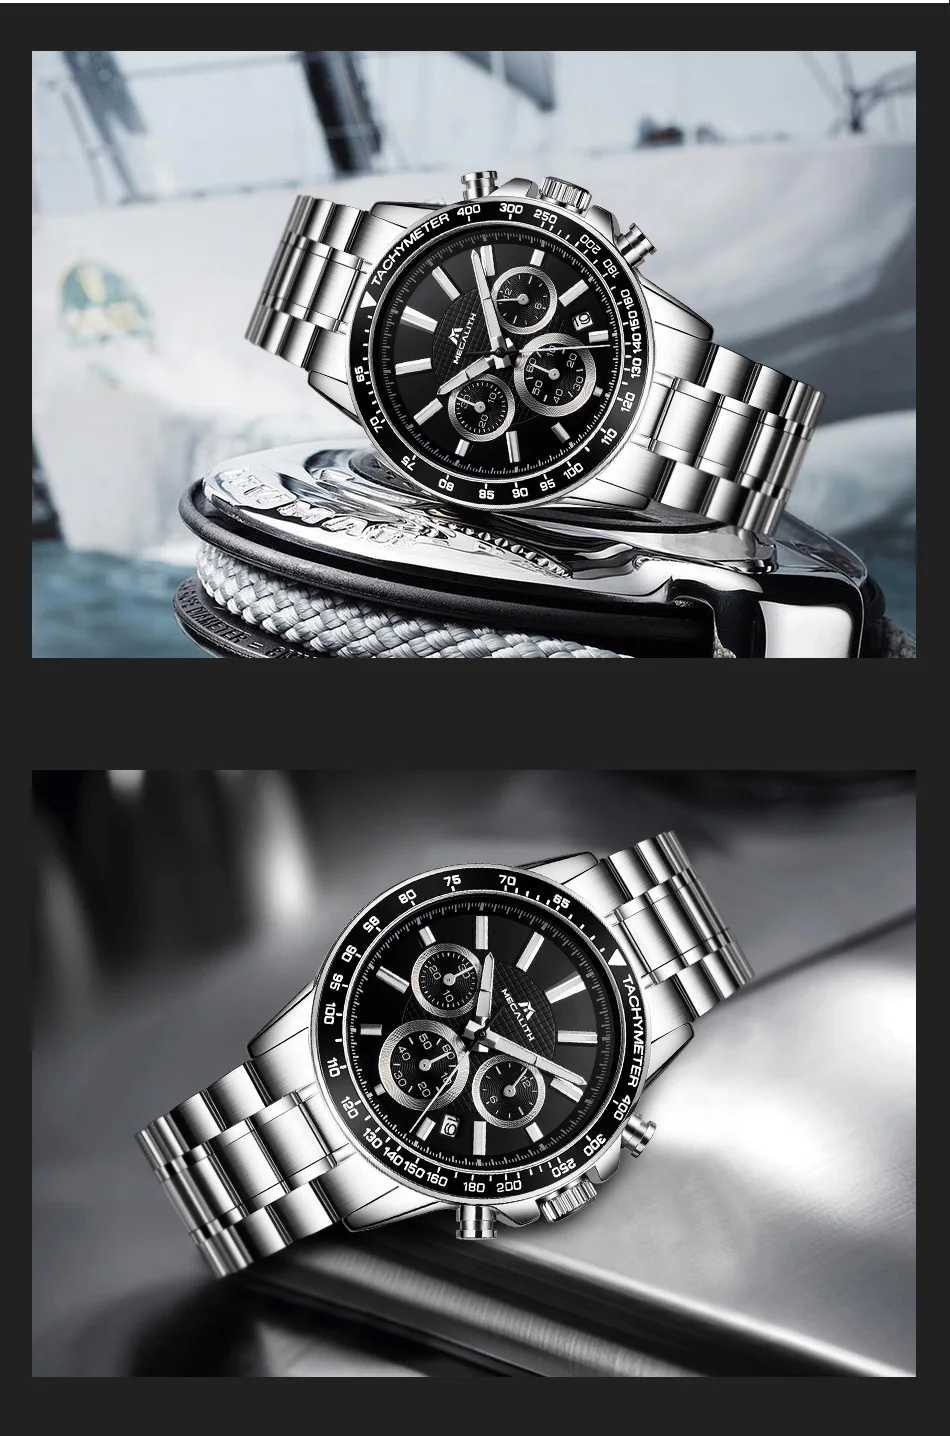 MEGALITH Топ Бренд роскошные часы водонепроницаемые спортивные часы хронограф Дата Бизнес Кварцевые часы для мужчин Relogio Masculino